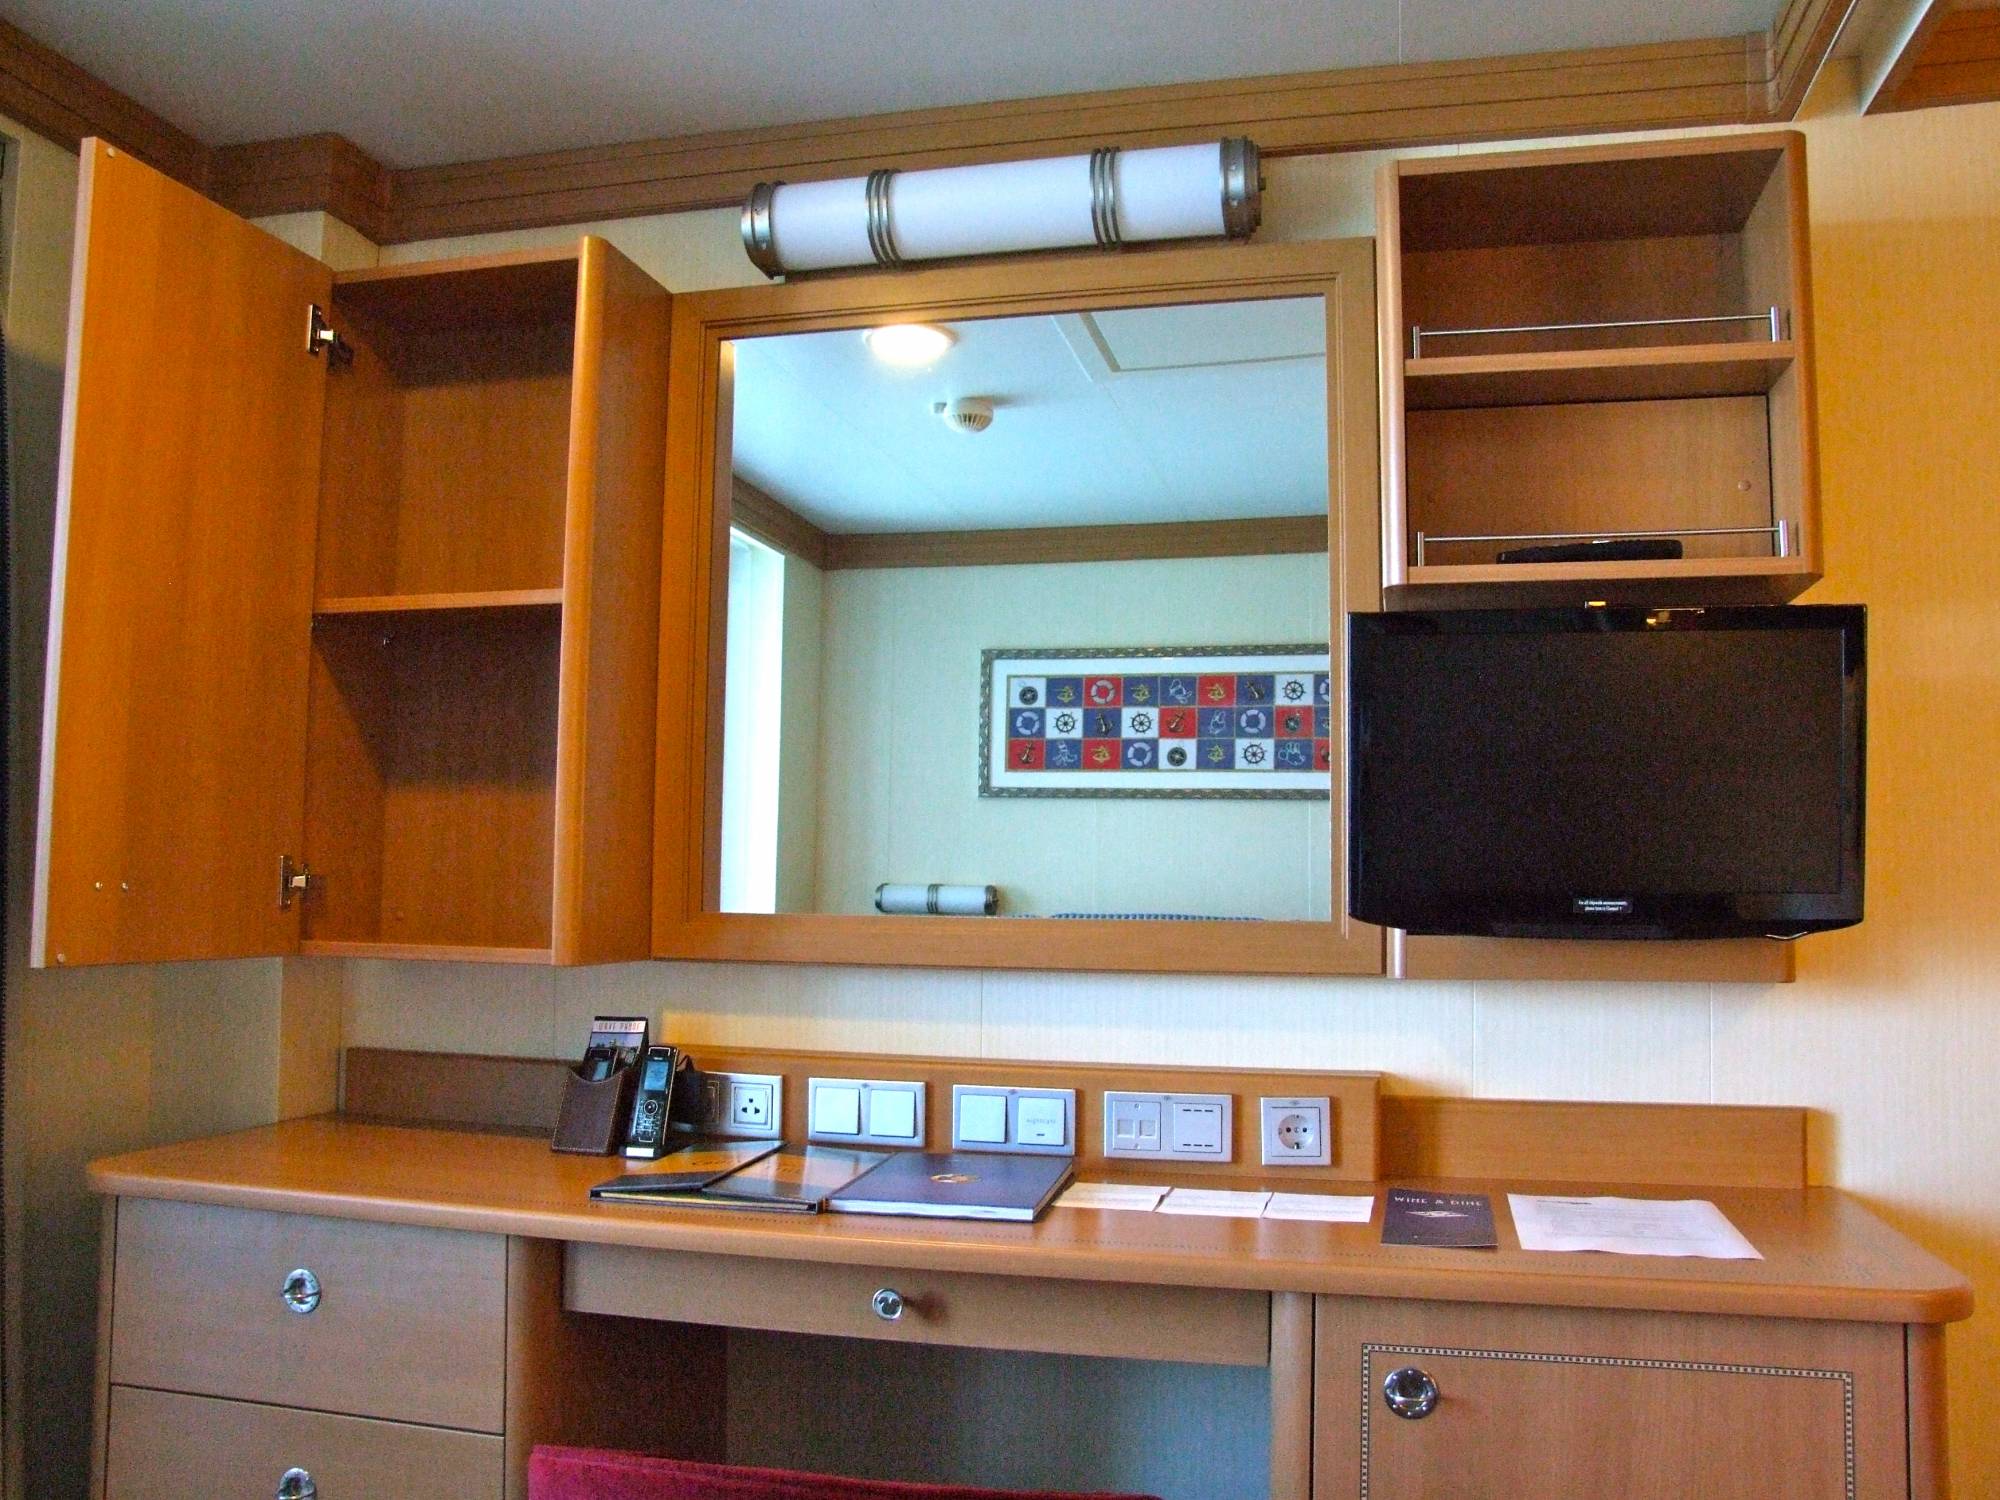 Disney Dream - Desk, TV, Shelves in Stateroom (#7022)